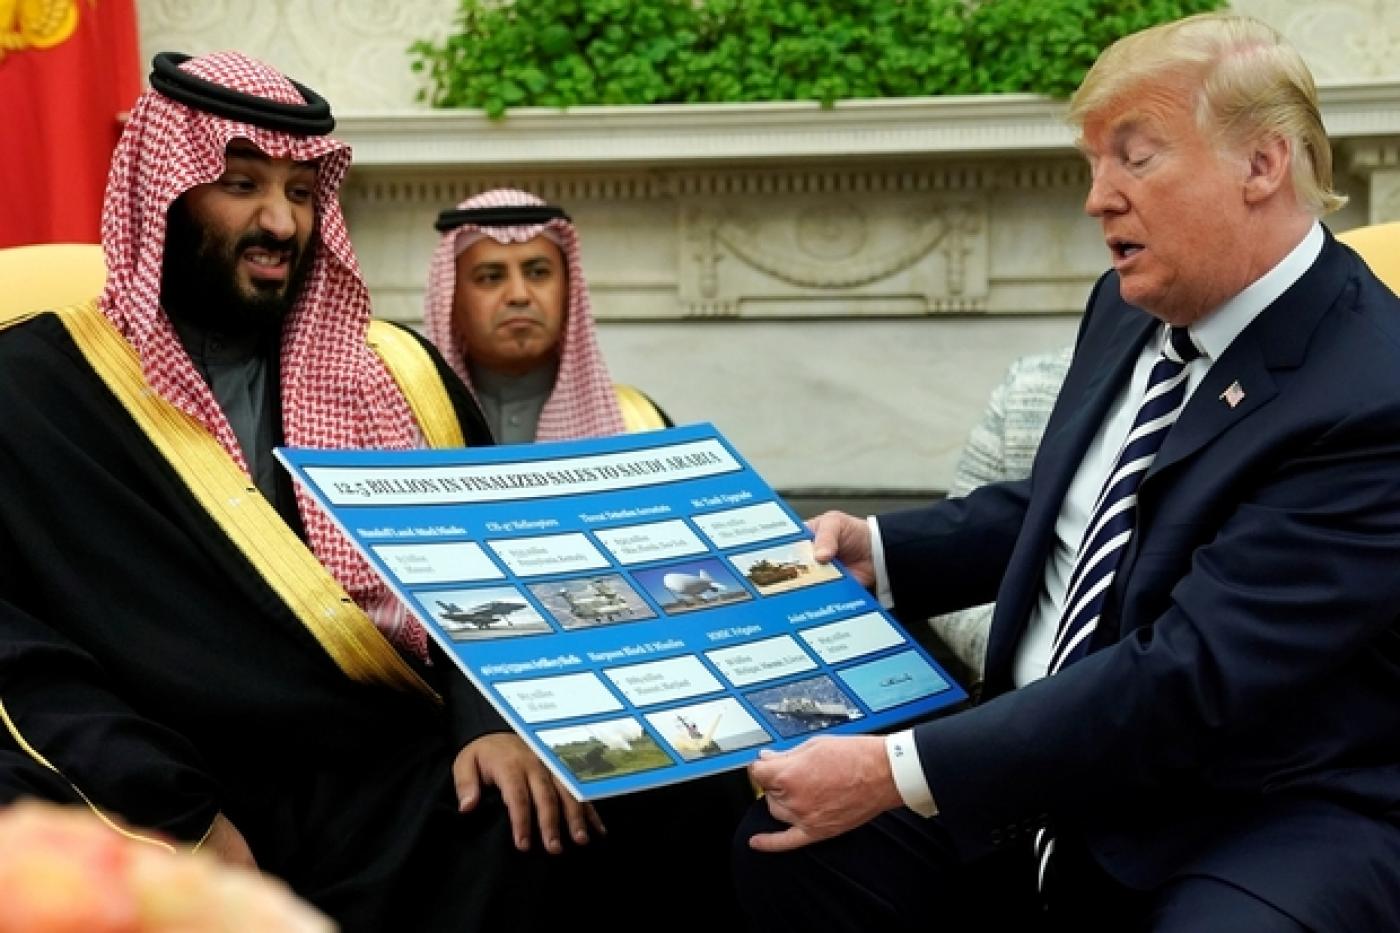 Le président américain Donald Trump montre un tableau des ventes d’armes au prince héritier saoudien Mohammed ben Salmane à la Maison Blanche le 20 mars (Reuters)